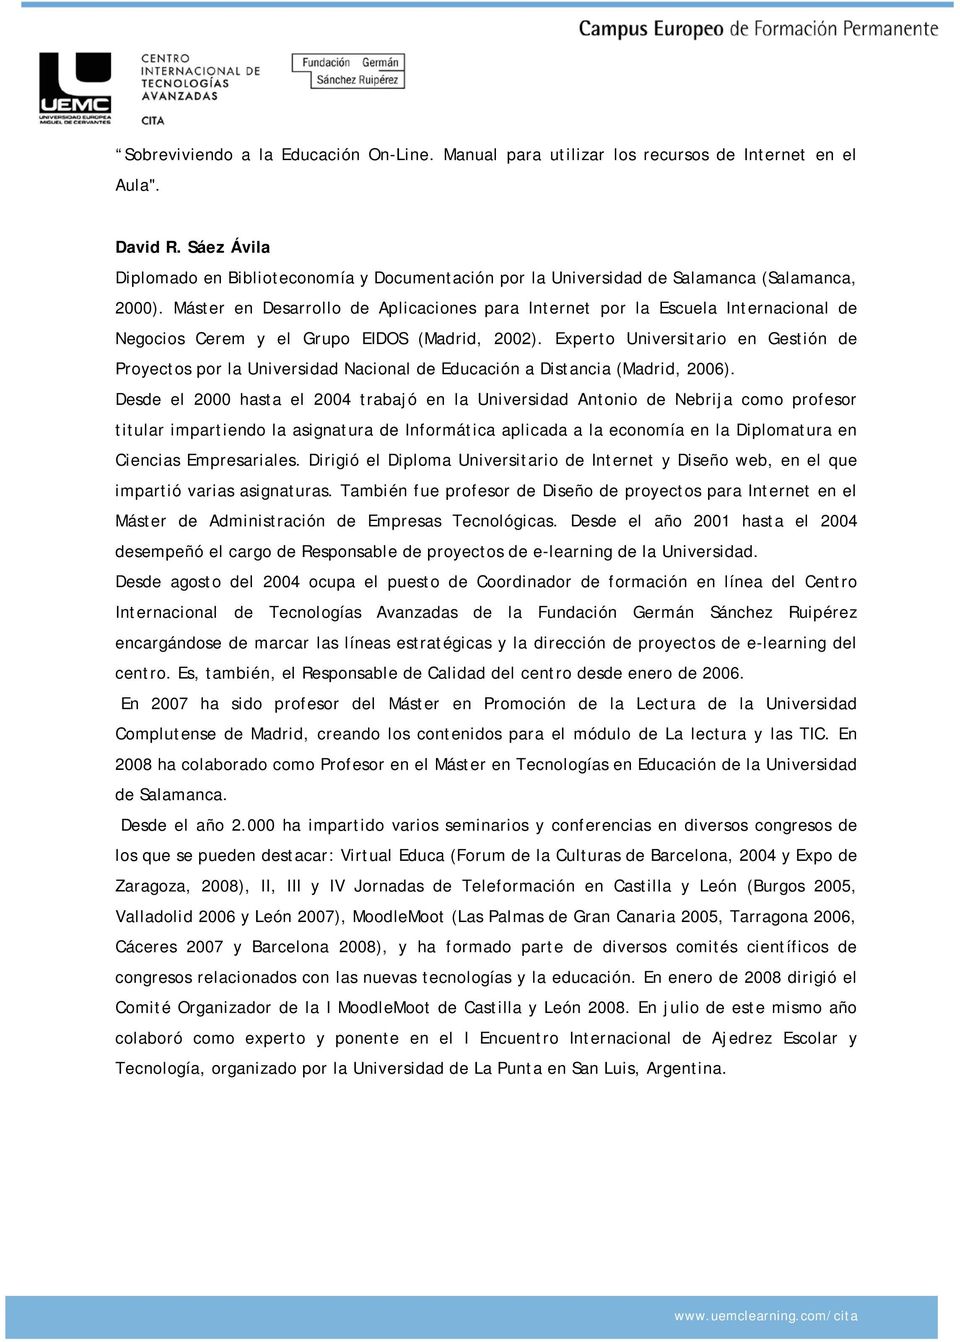 Máster en Desarrollo de Aplicaciones para Internet por la Escuela Internacional de Negocios Cerem y el Grupo EIDOS (Madrid, 2002).